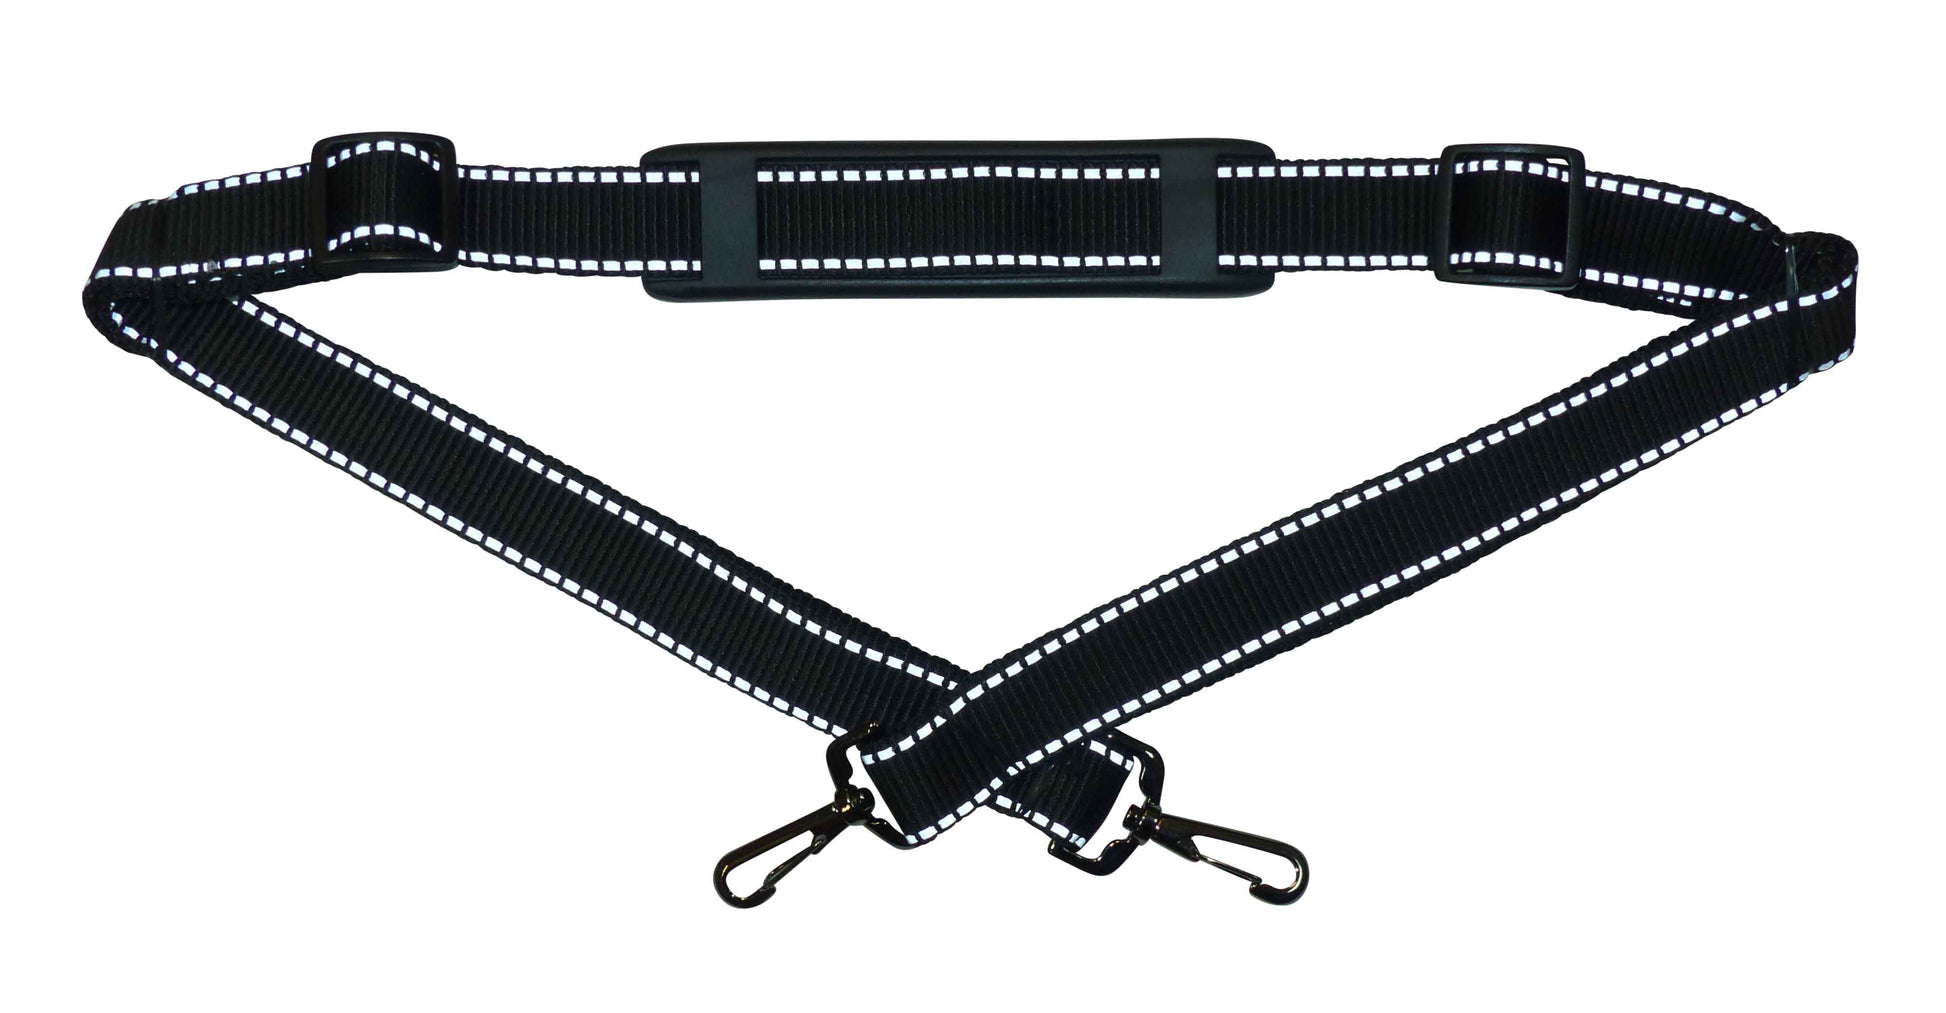 Benristraps 25mm Bag Strap with Reflective Stripe, Metal Clips, Shoulder Pad, 150cm